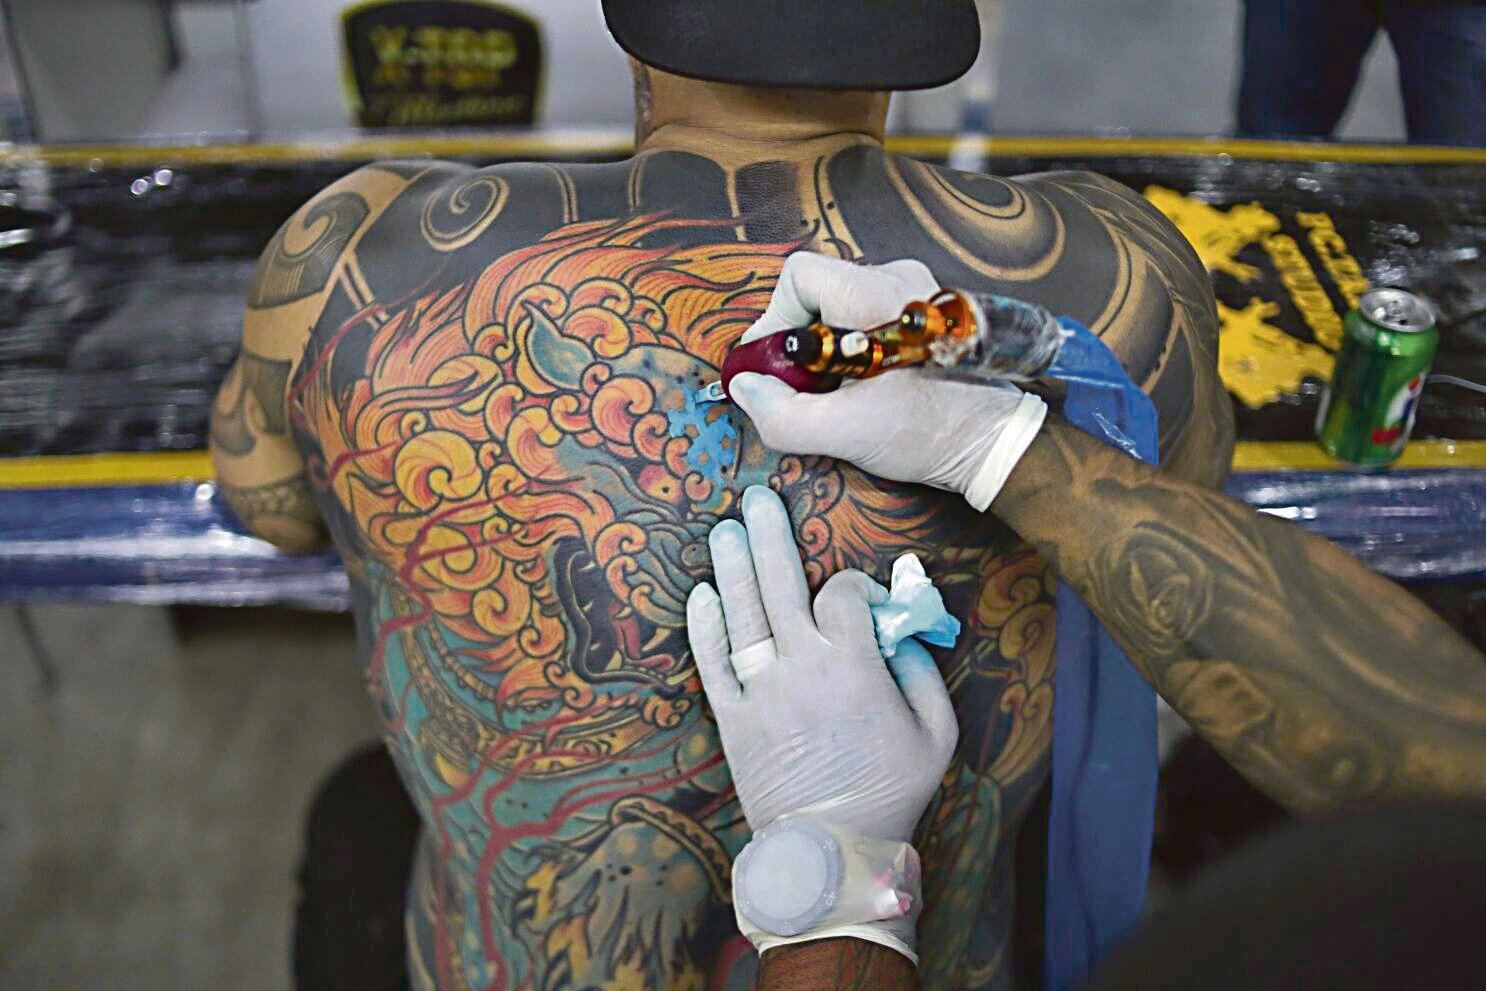 Borrar tatuajes, cada vez más simple gracias a la tecnología